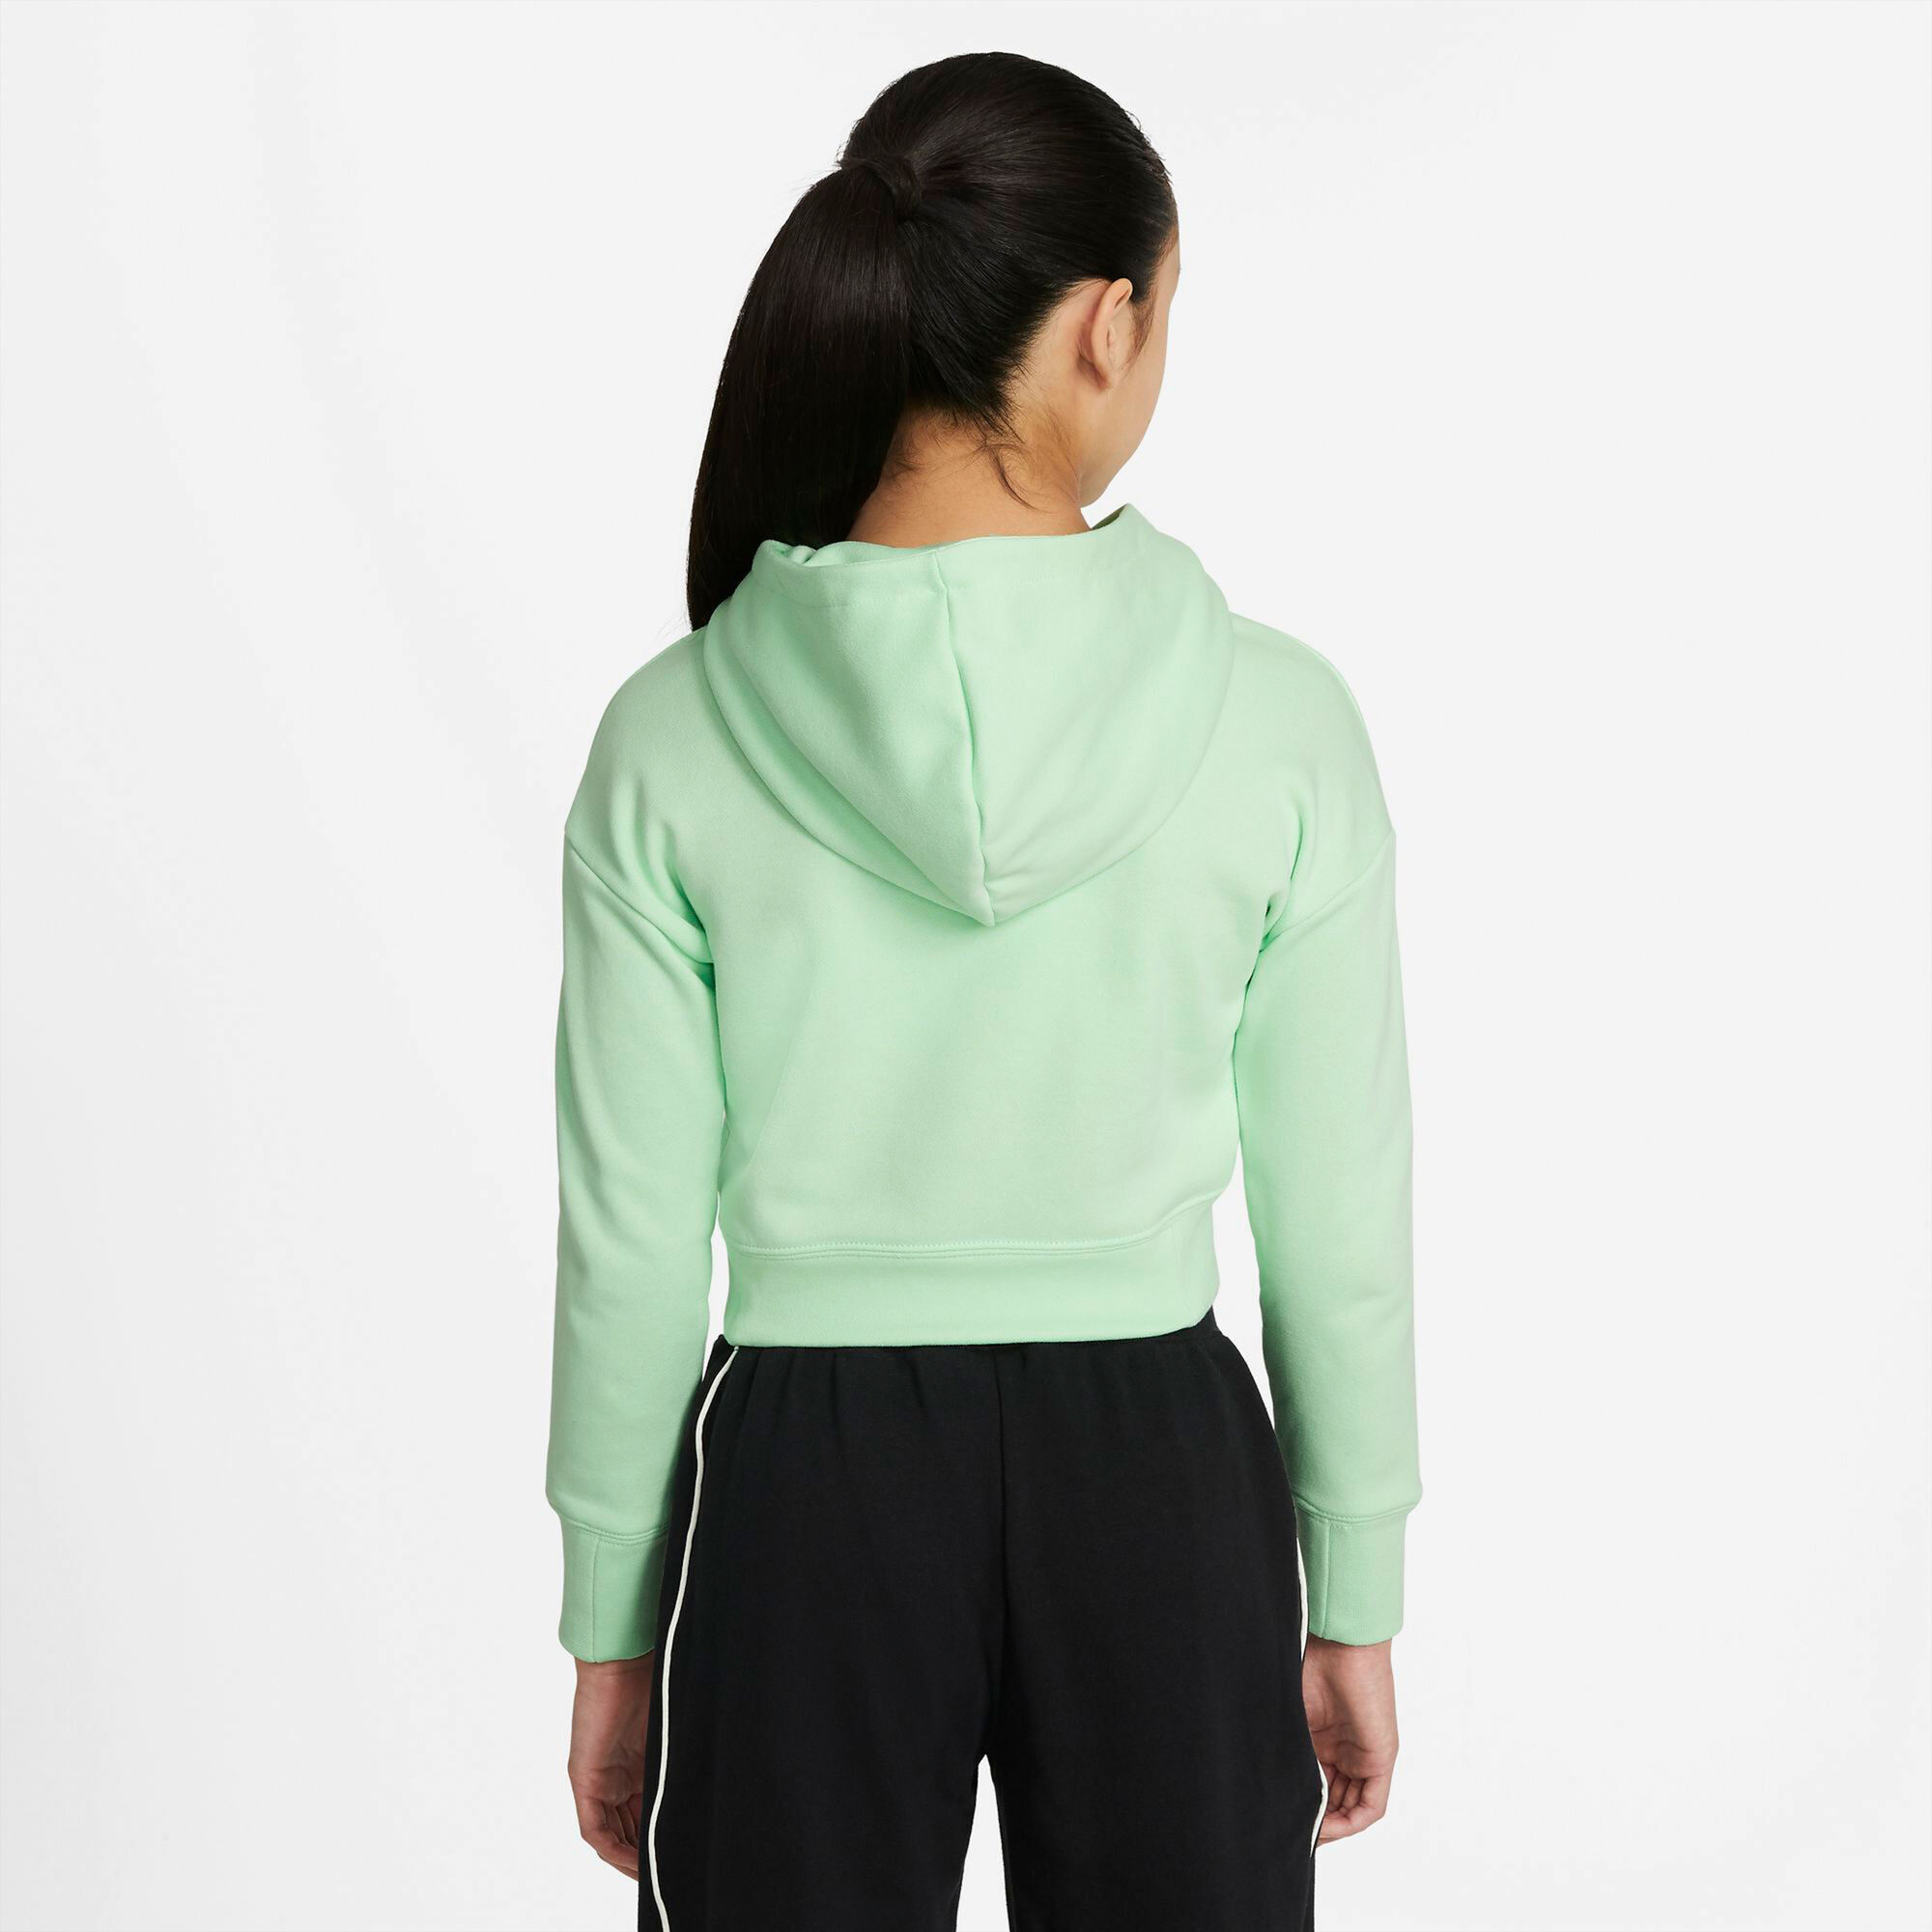 buy Nike Sportswear Hoody Girls - Light Green, Grey online | Tennis-Point